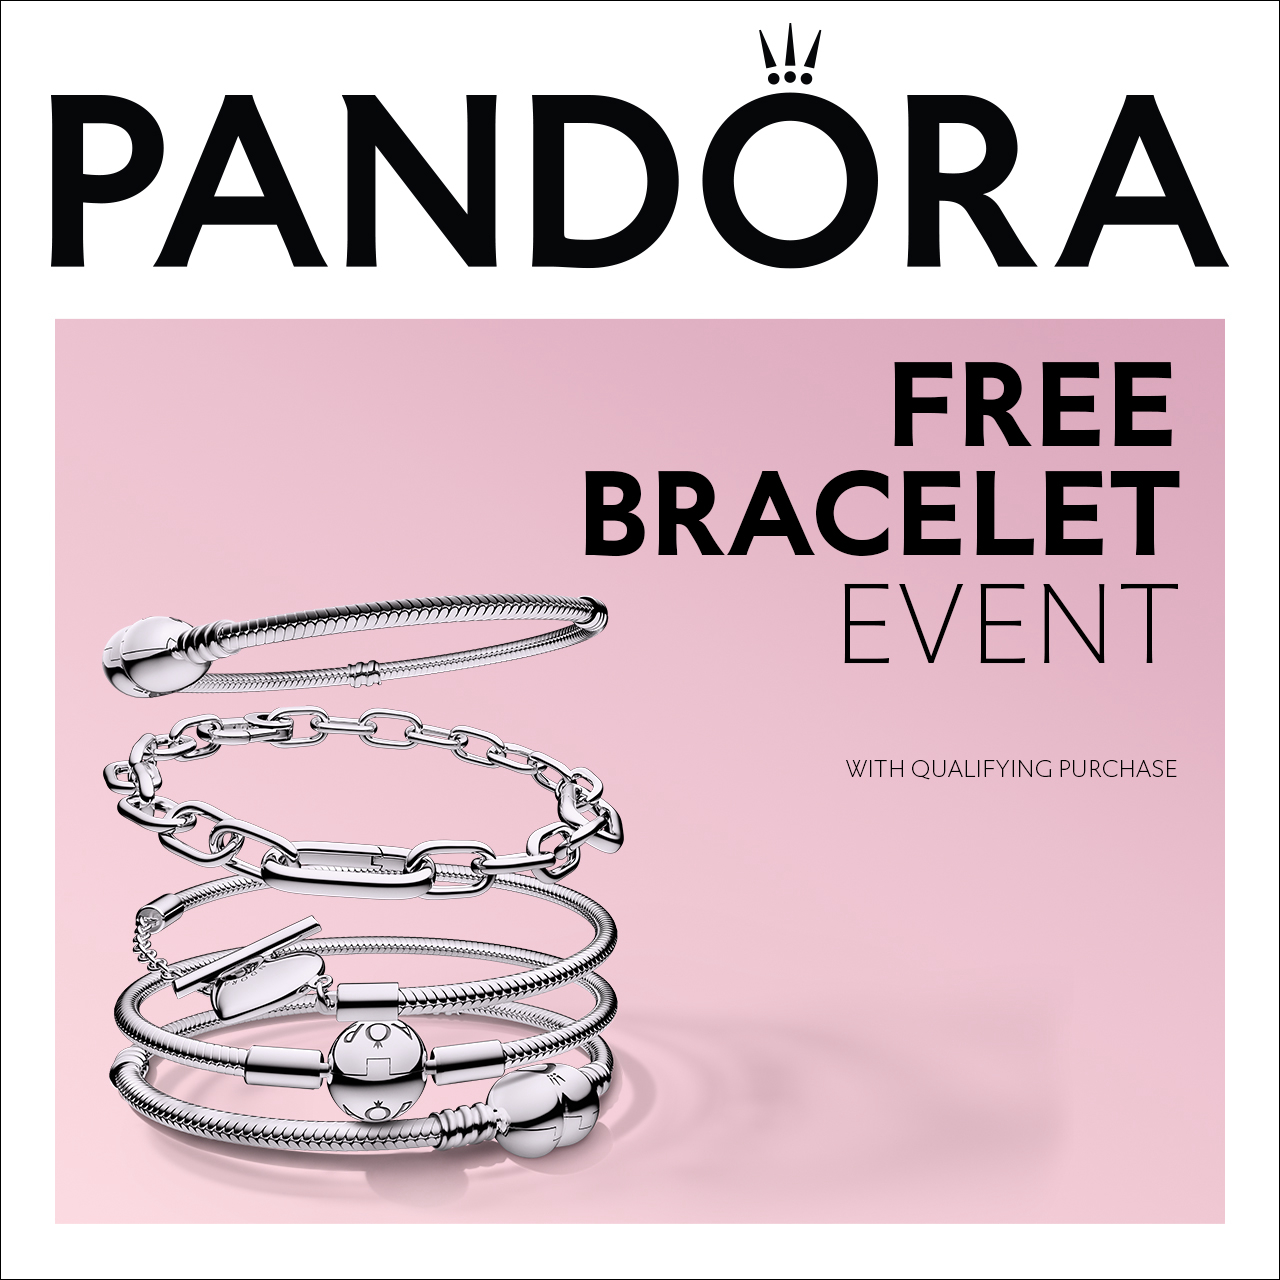 Pandora Campaign 109 Free Bracelet Event EN 1280x1280 1